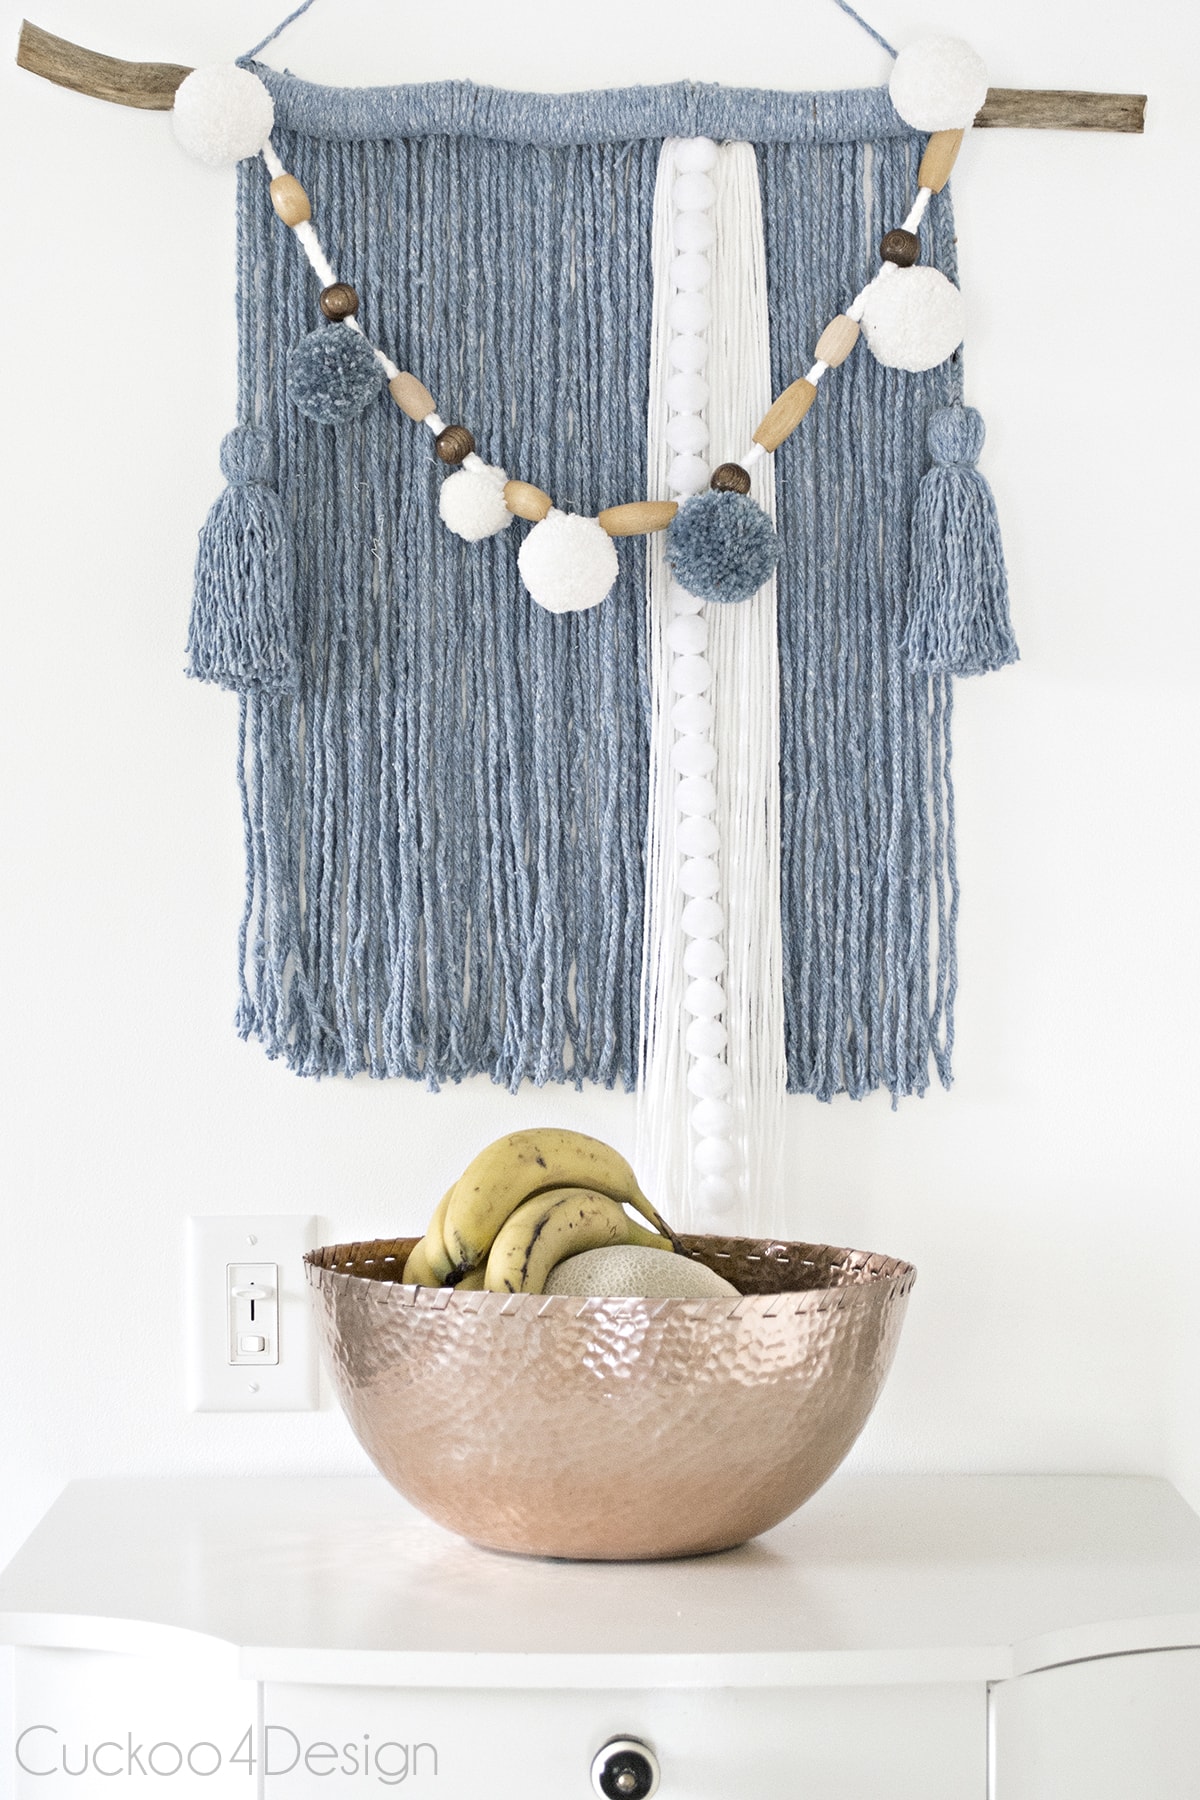 mop head yarn wall hanging